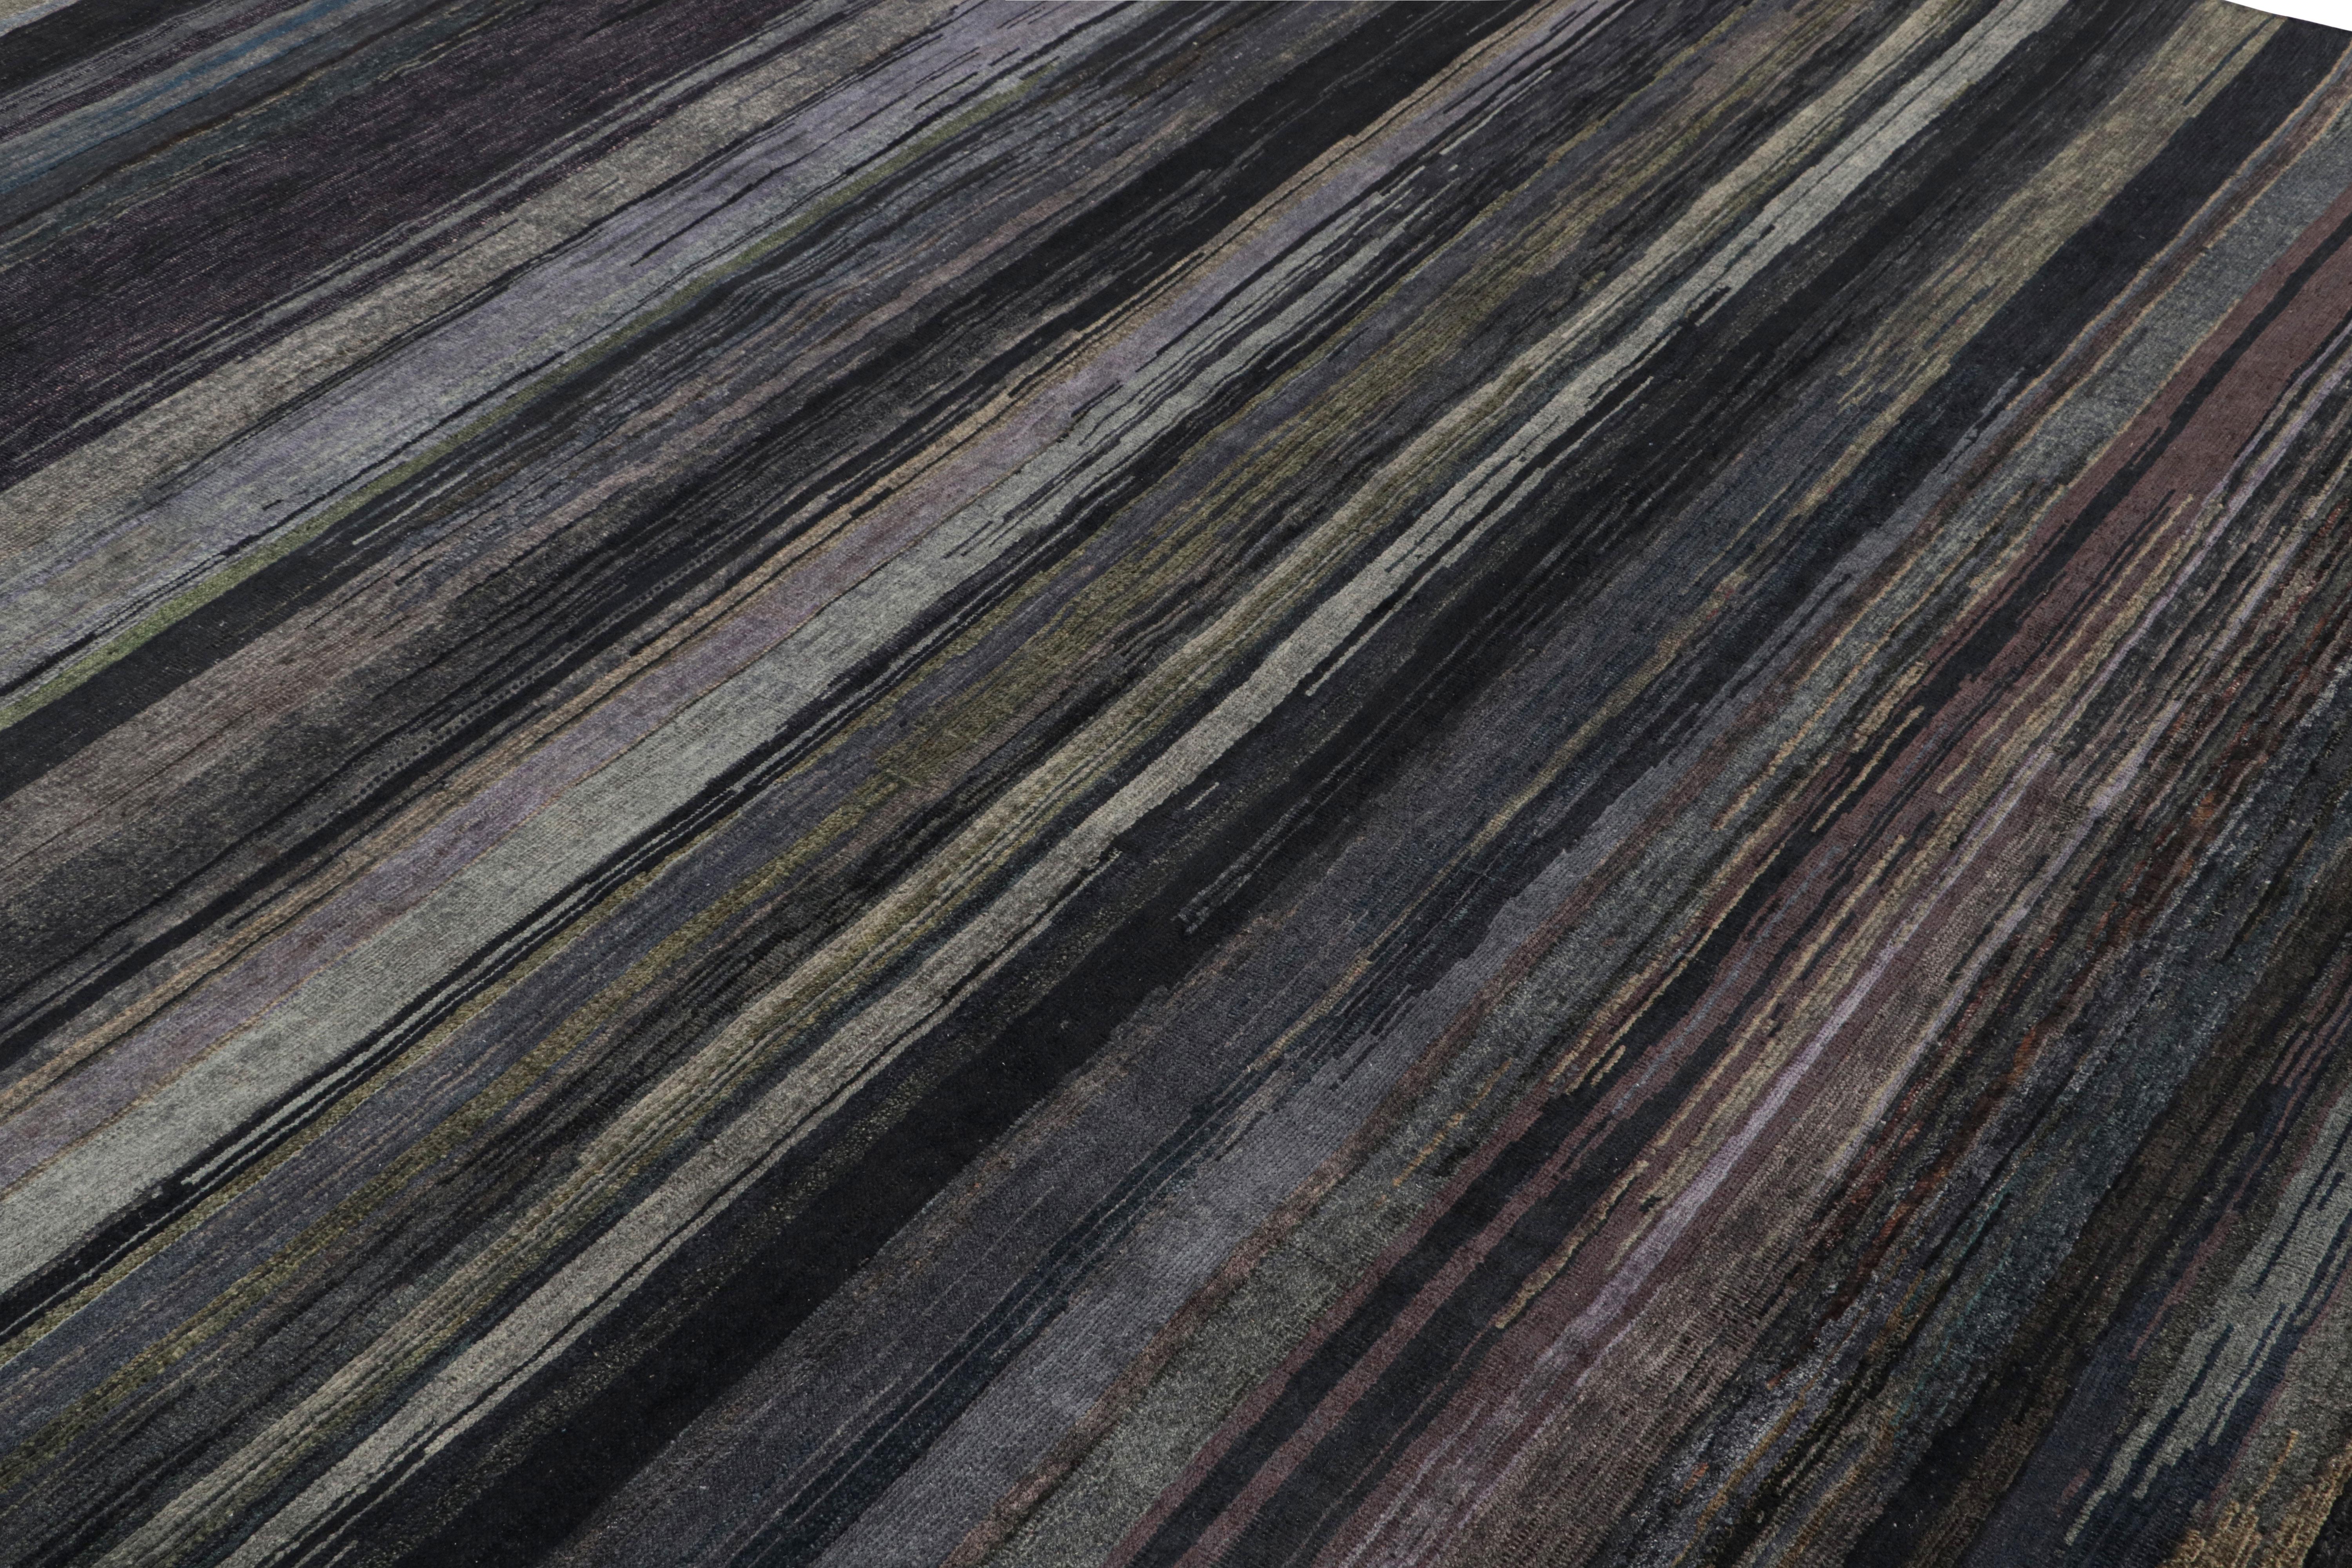 Ce tapis texturé 9x12 est un nouvel ajout à la Collection Texture of Color de Rug & Kilim.

Plus loin dans le Design :

Réalisé en laine nouée à la main, ce tapis reflète une nouvelle approche du thème de cette collection, notamment une teinture